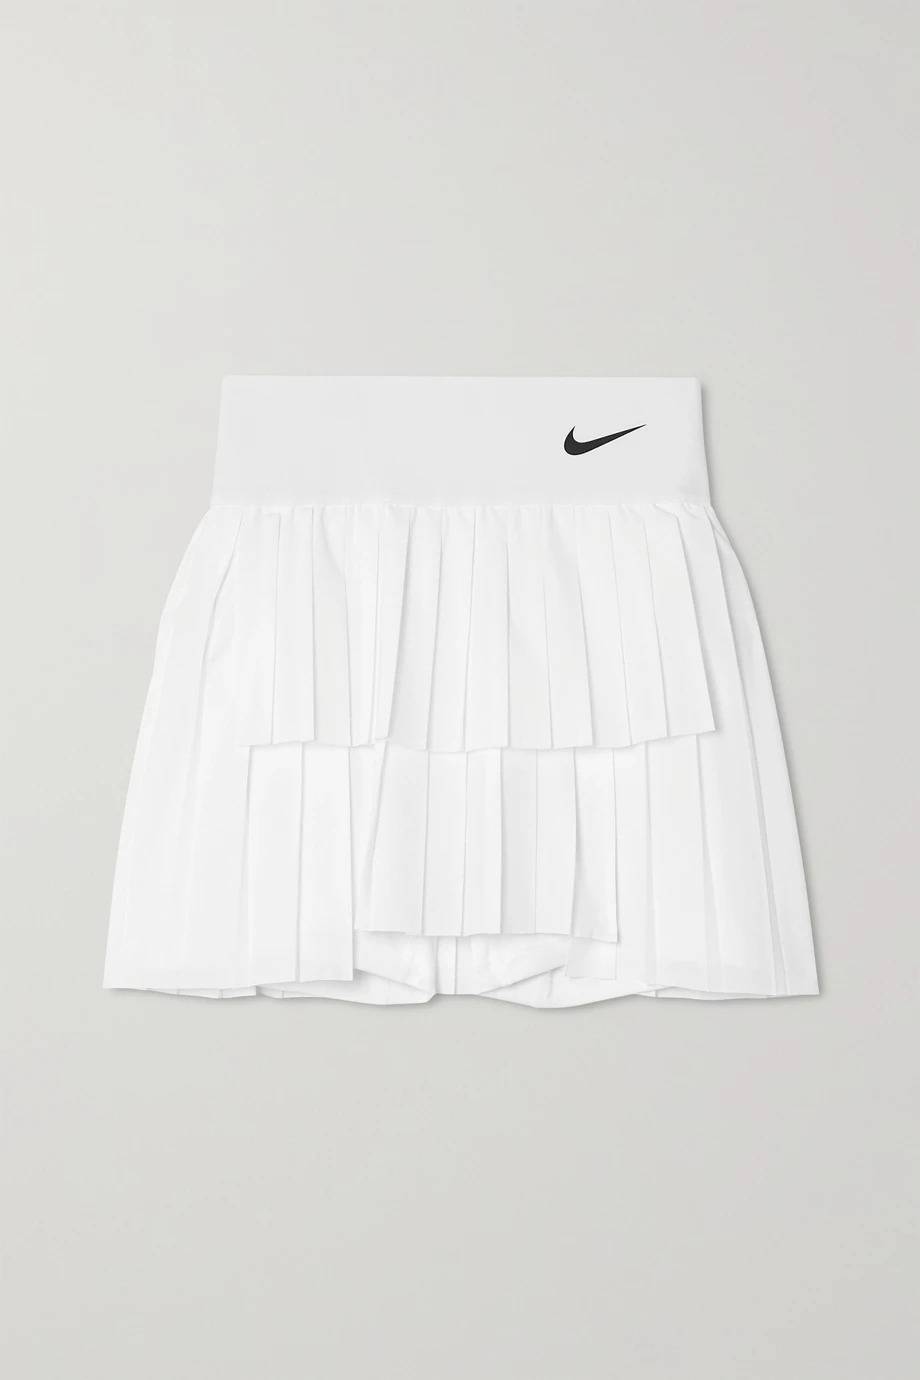 Spódniczke Nike, 248 zł (Fot. materiały prasowe)